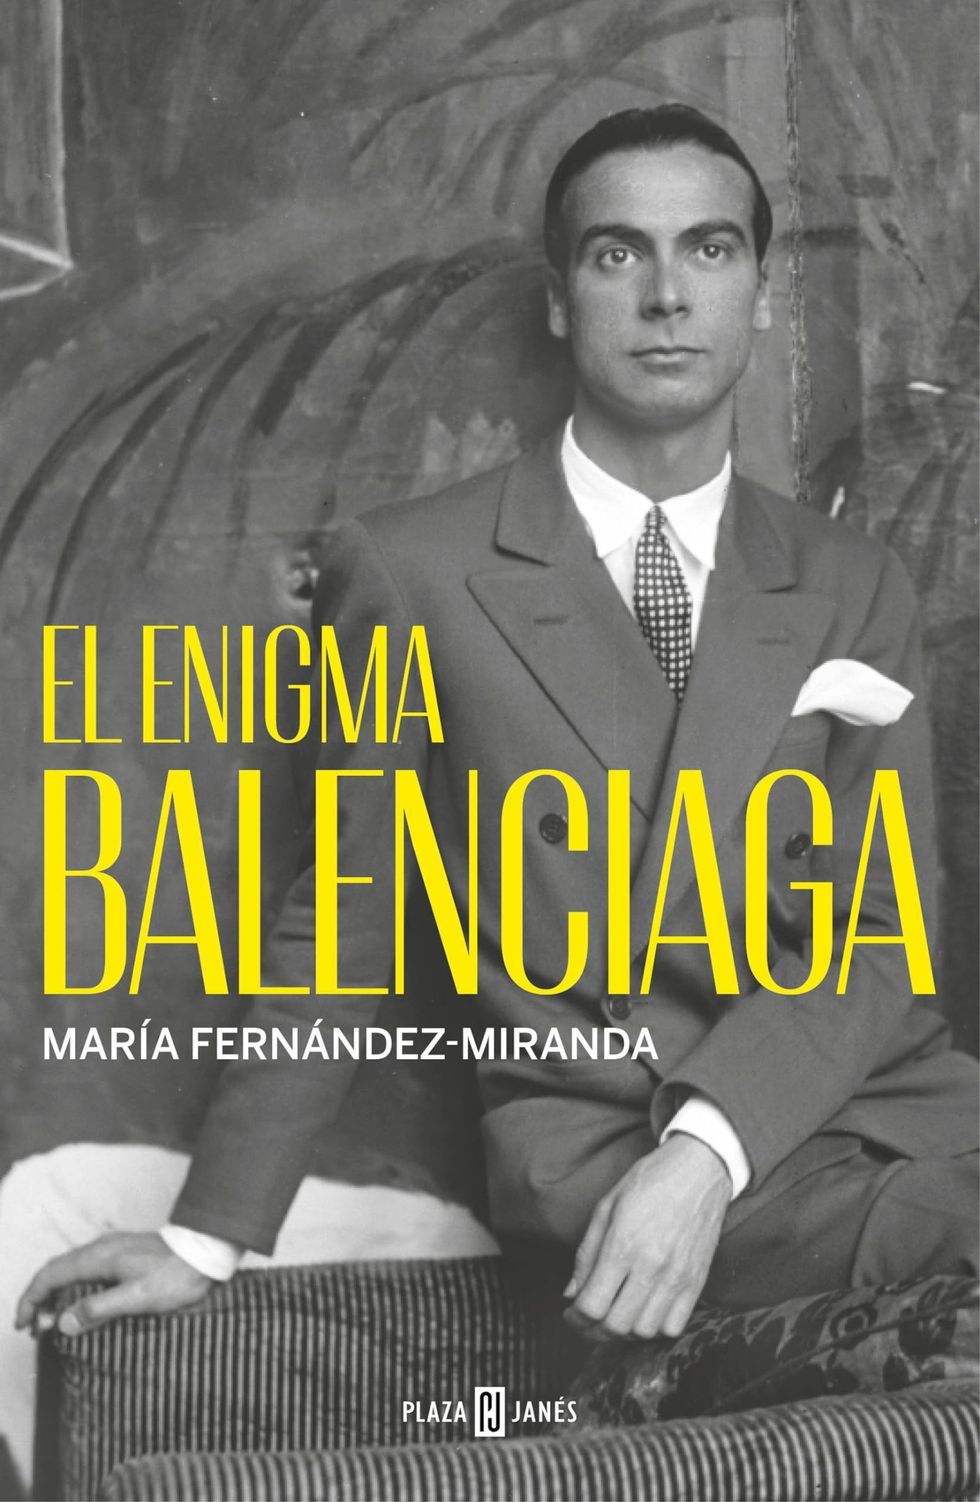 El enigma Balenciaga, de María Fernández-Miranda